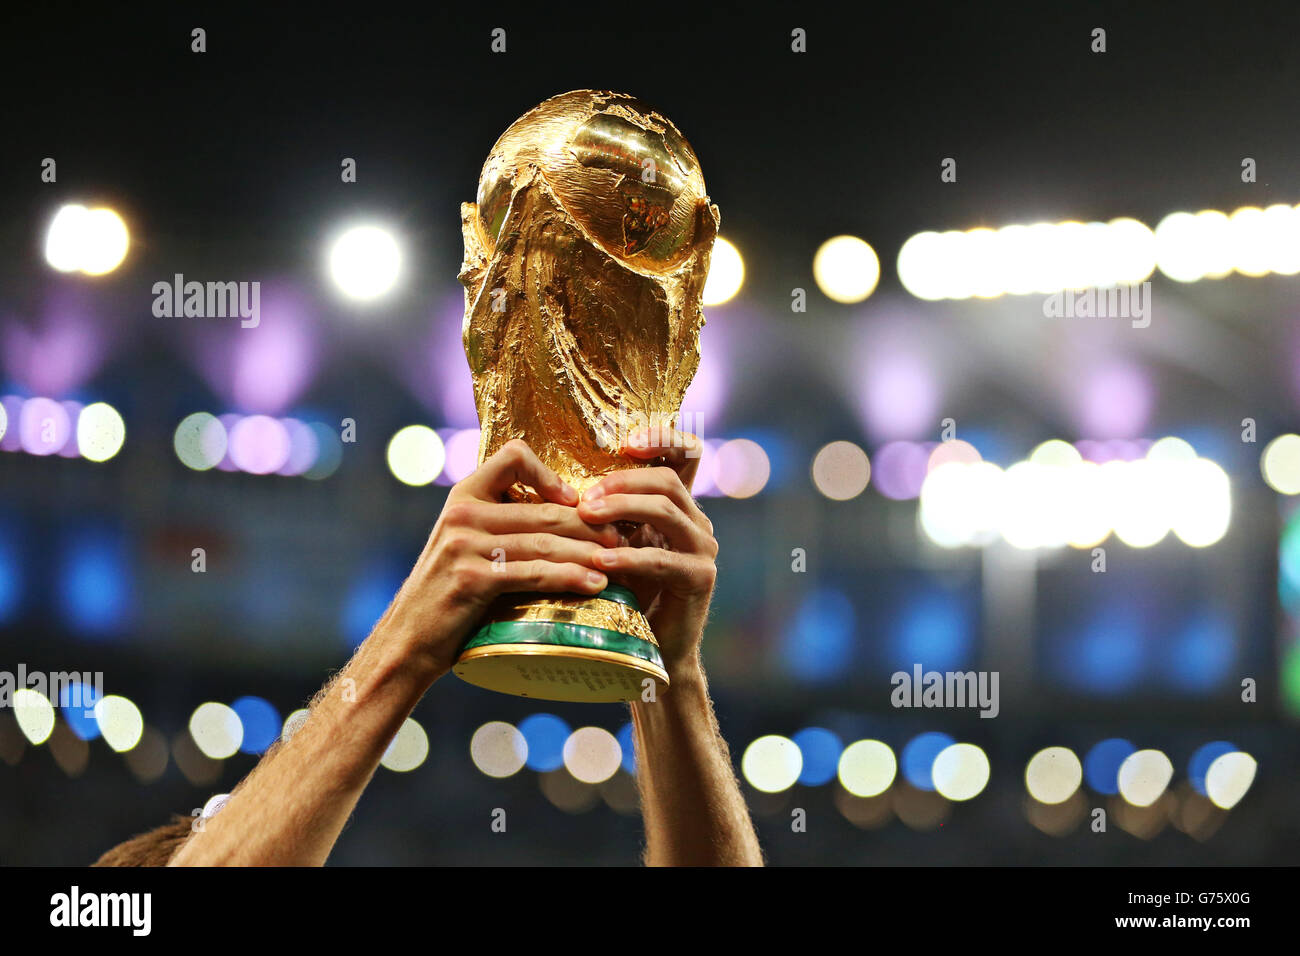 Football - coupe du monde de la FIFA 2014 - finale - Allemagne / Argentine - Estadio do Maracana.Détail d'un joueur allemand qui a remporté le trophée de la coupe du monde de la FIFA Banque D'Images